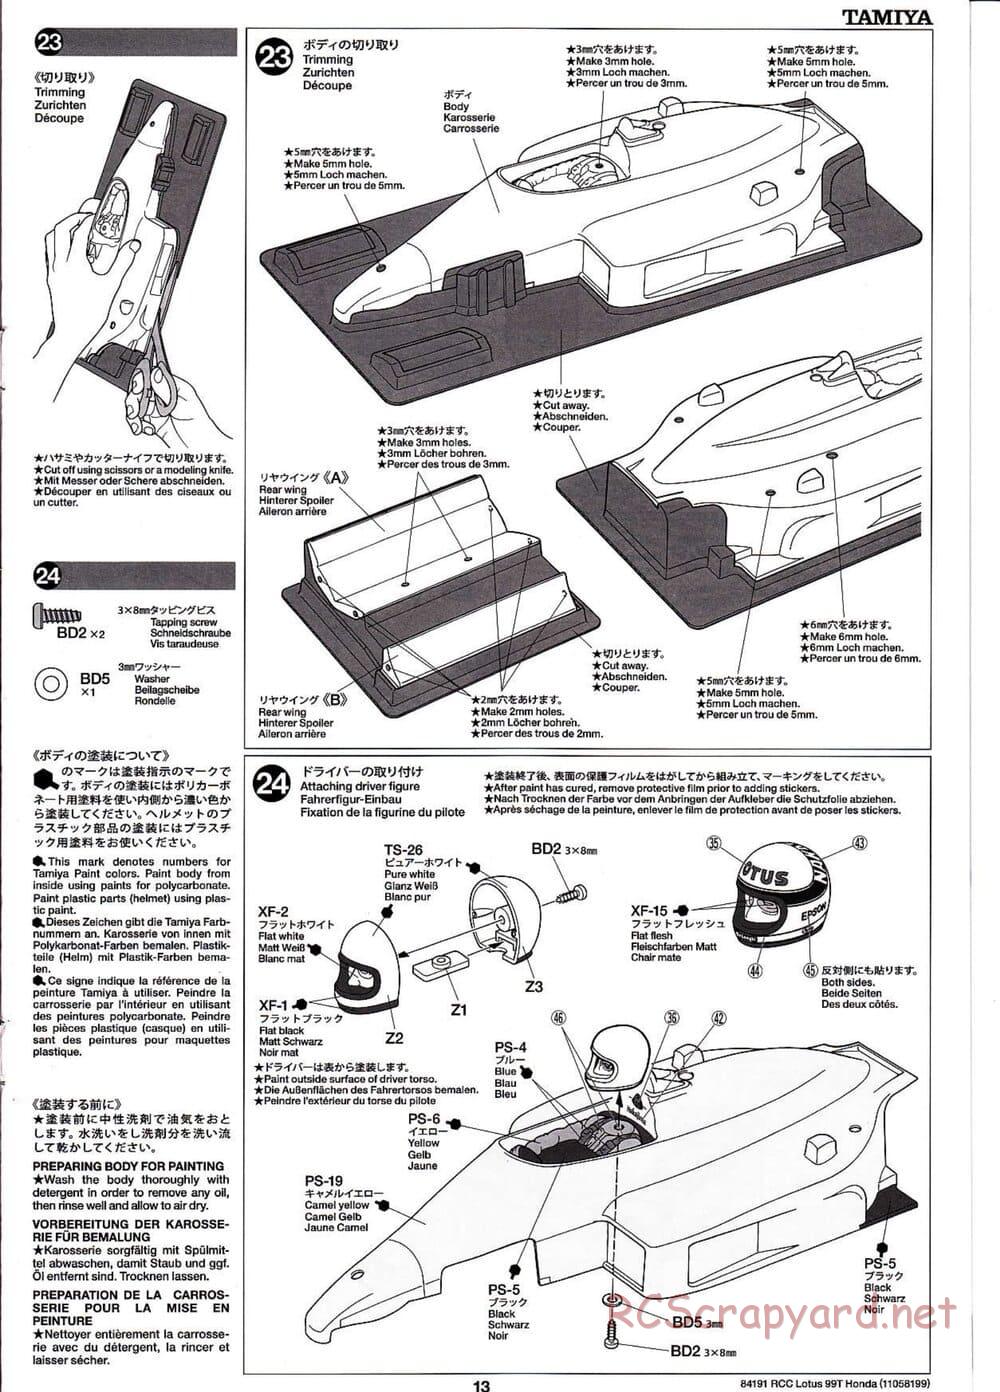 Tamiya - Team Lotus 99T Honda - F103 Chassis - Manual - Page 13